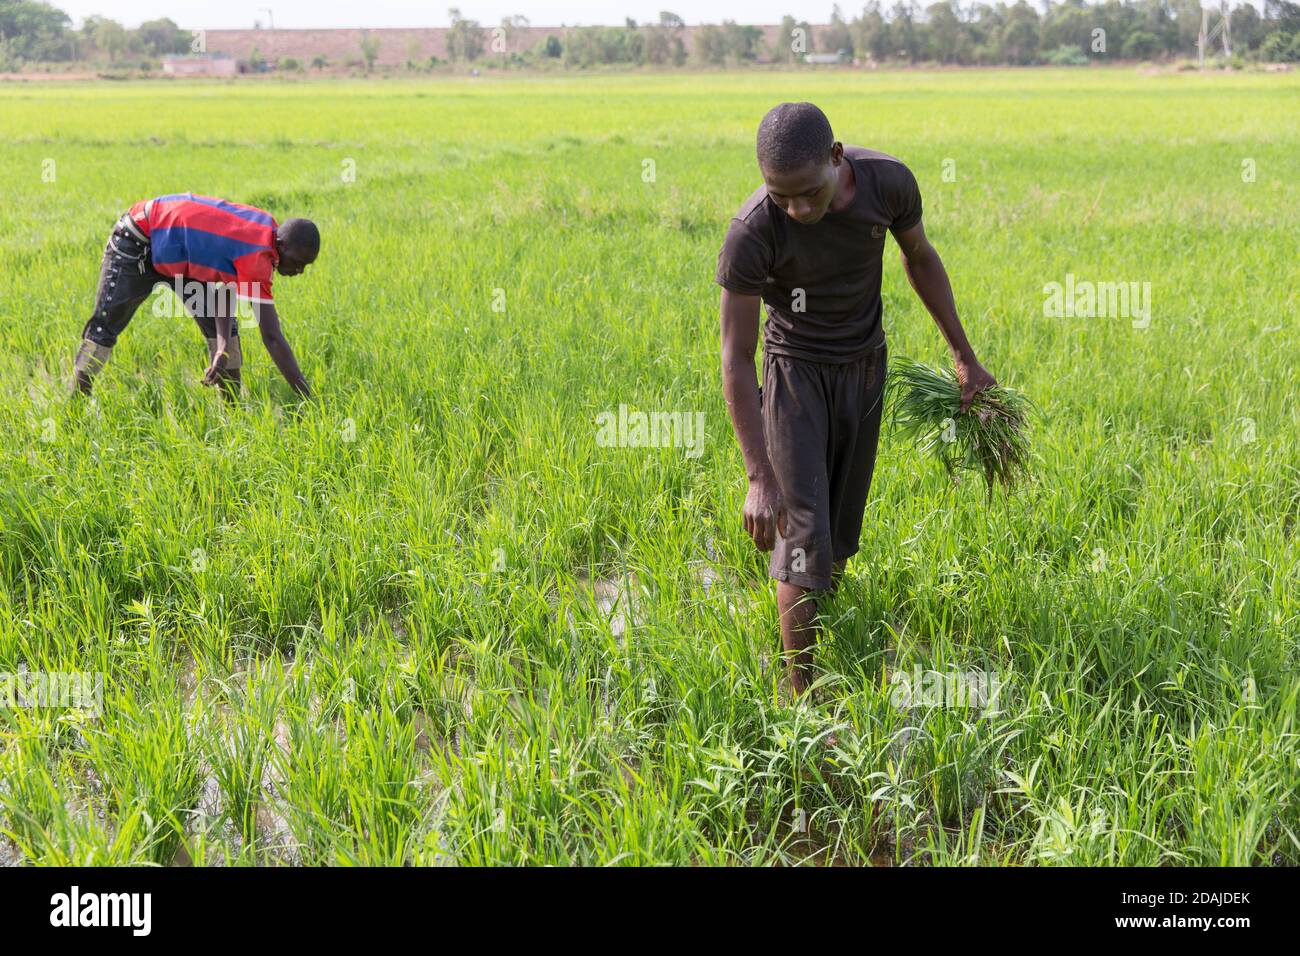 Selingue, Mali, 26 aprile 2015; Seydou Traore, 21 (T-shirt nera) Baissa Keita, 20, (camicia bianca e marrone) e Modibo Keita, 19. Il campo appartiene al padre e misura mezzo ettaro. Usano sia fertilizzanti organici che chimici, come la terra è povera. Il padre vorrebbe avere un po' di terreno nuovo, ma non può permetterselo. Pagano 35,000 CFA per stagione per l'acqua di irrigazione. Normalmente un ettaro di riso richiede 4 sacchi di NPK e 4 sacchi di fertilizzante Uree. Questo costa 100,000 CFA per ettaro. Da Selingue il coltivatore può ottenere di solito 5 a 6 tonnellate di riso per ettaro. Foto Stock